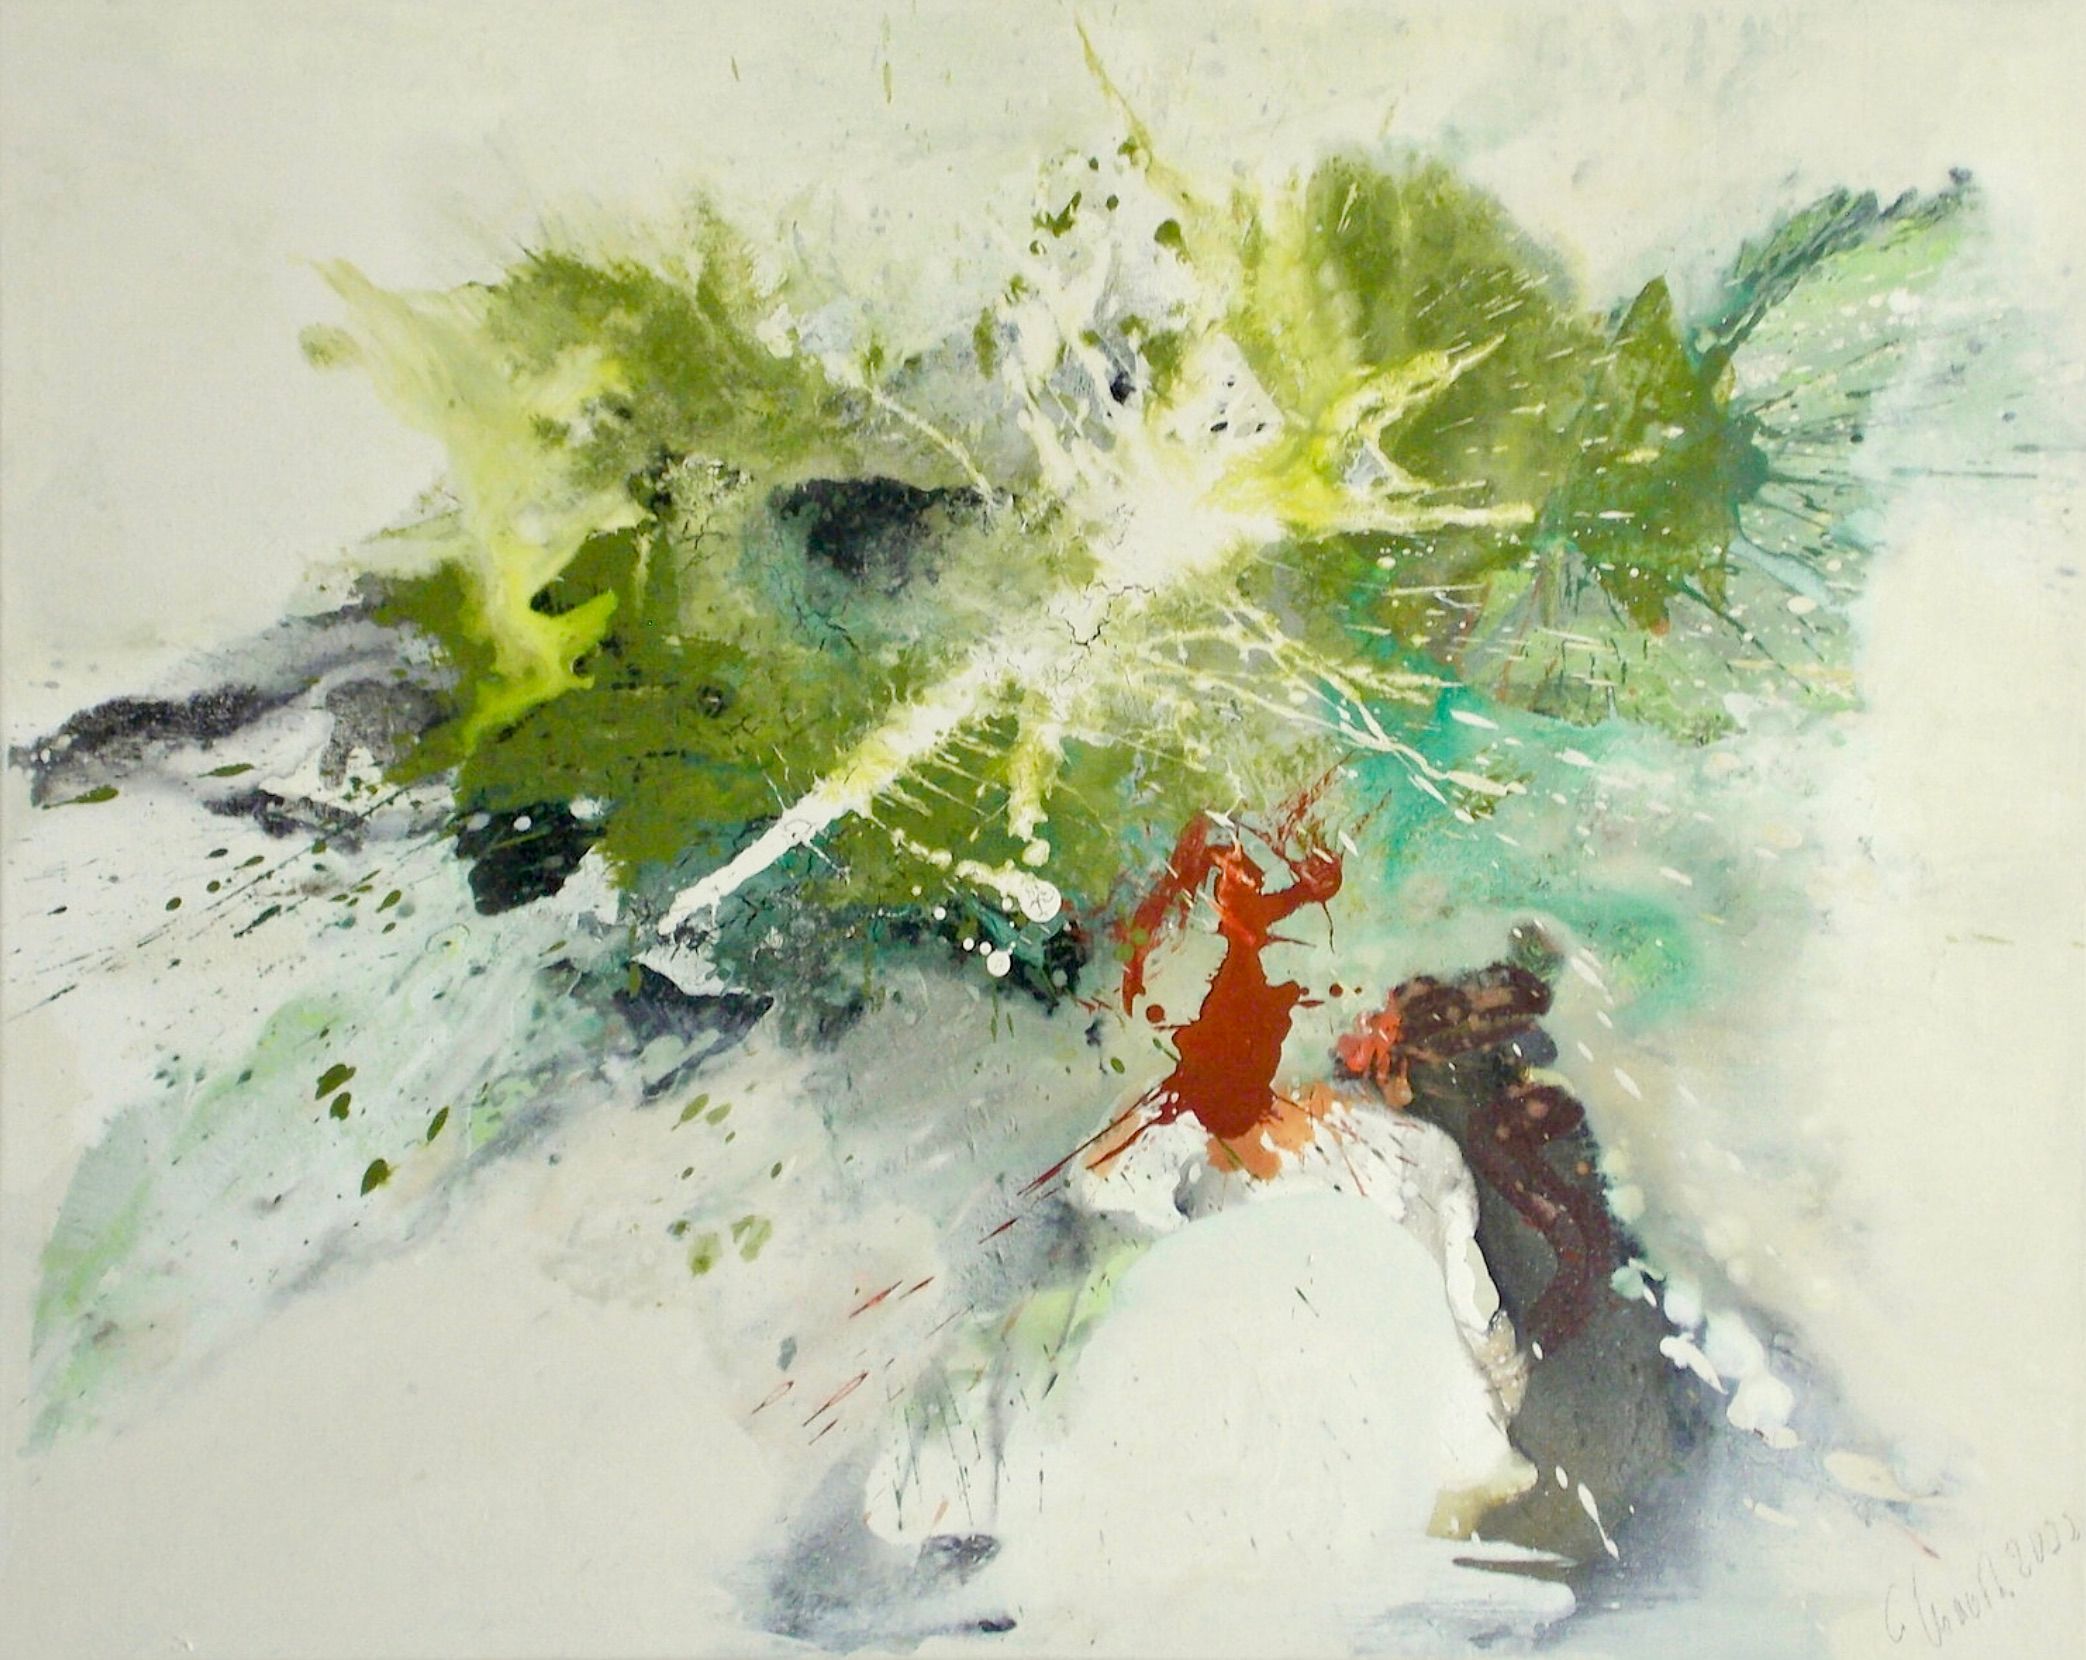 En el cuadro expresionista, abstracto y colorista "Anhelo de primavera", de Christa Haack, dominan los colores verde, turquesa, beige y rojo.